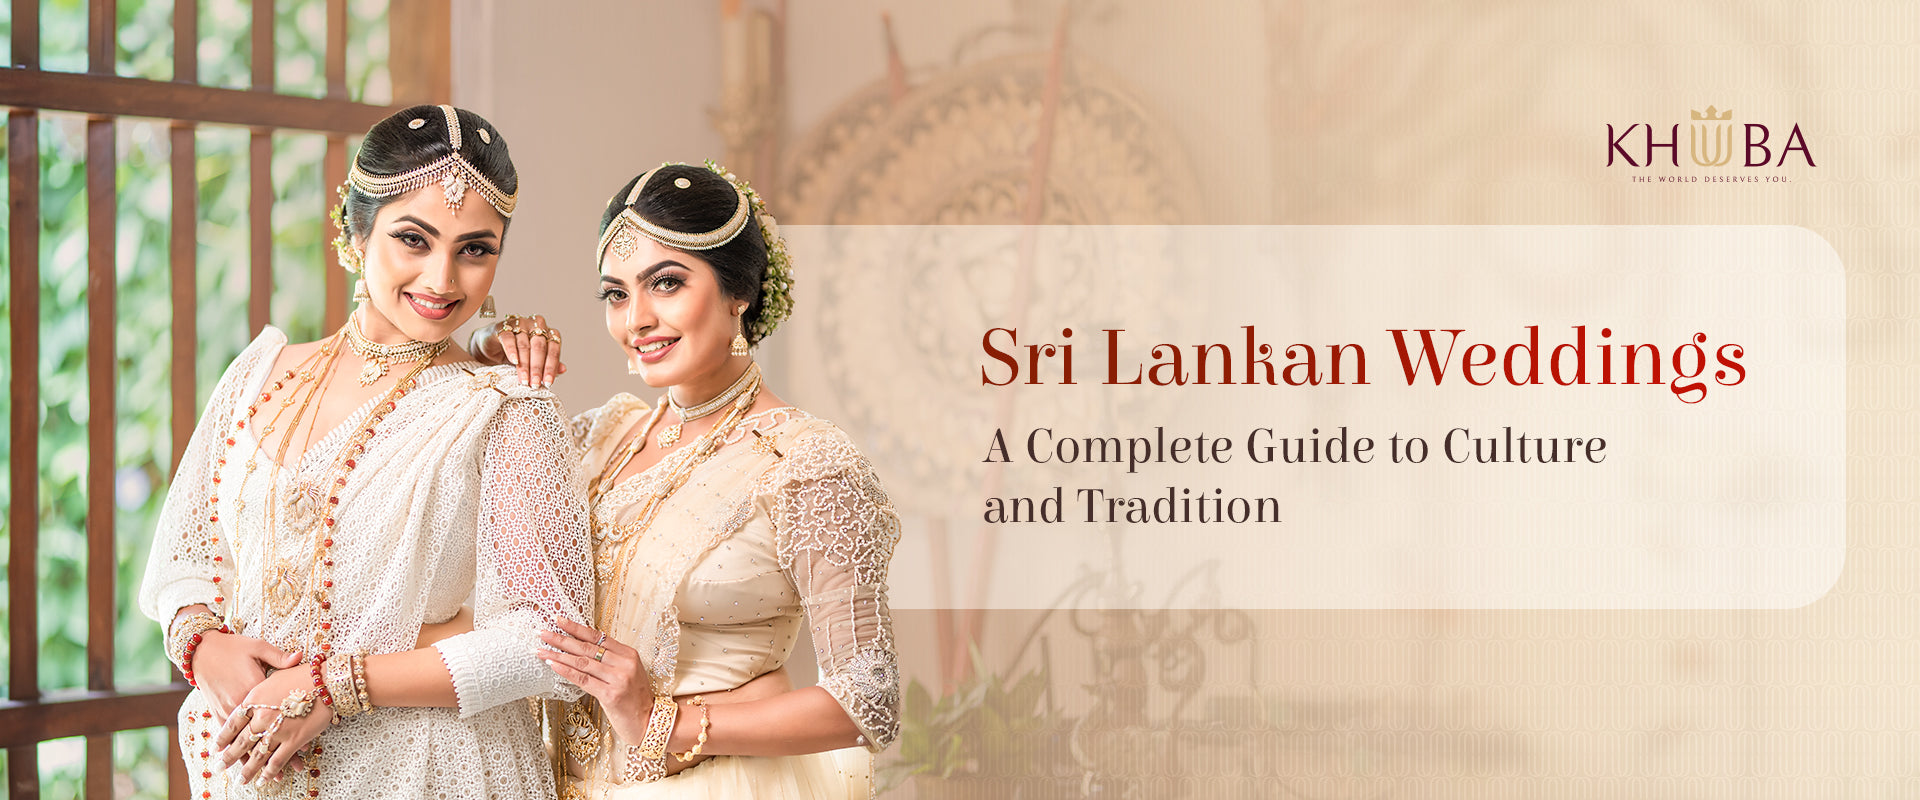 https://khuuba.com.au/cdn/shop/articles/sri_Lankan_wedding.jpg?crop=center&height=800&v=1698207423&width=1920